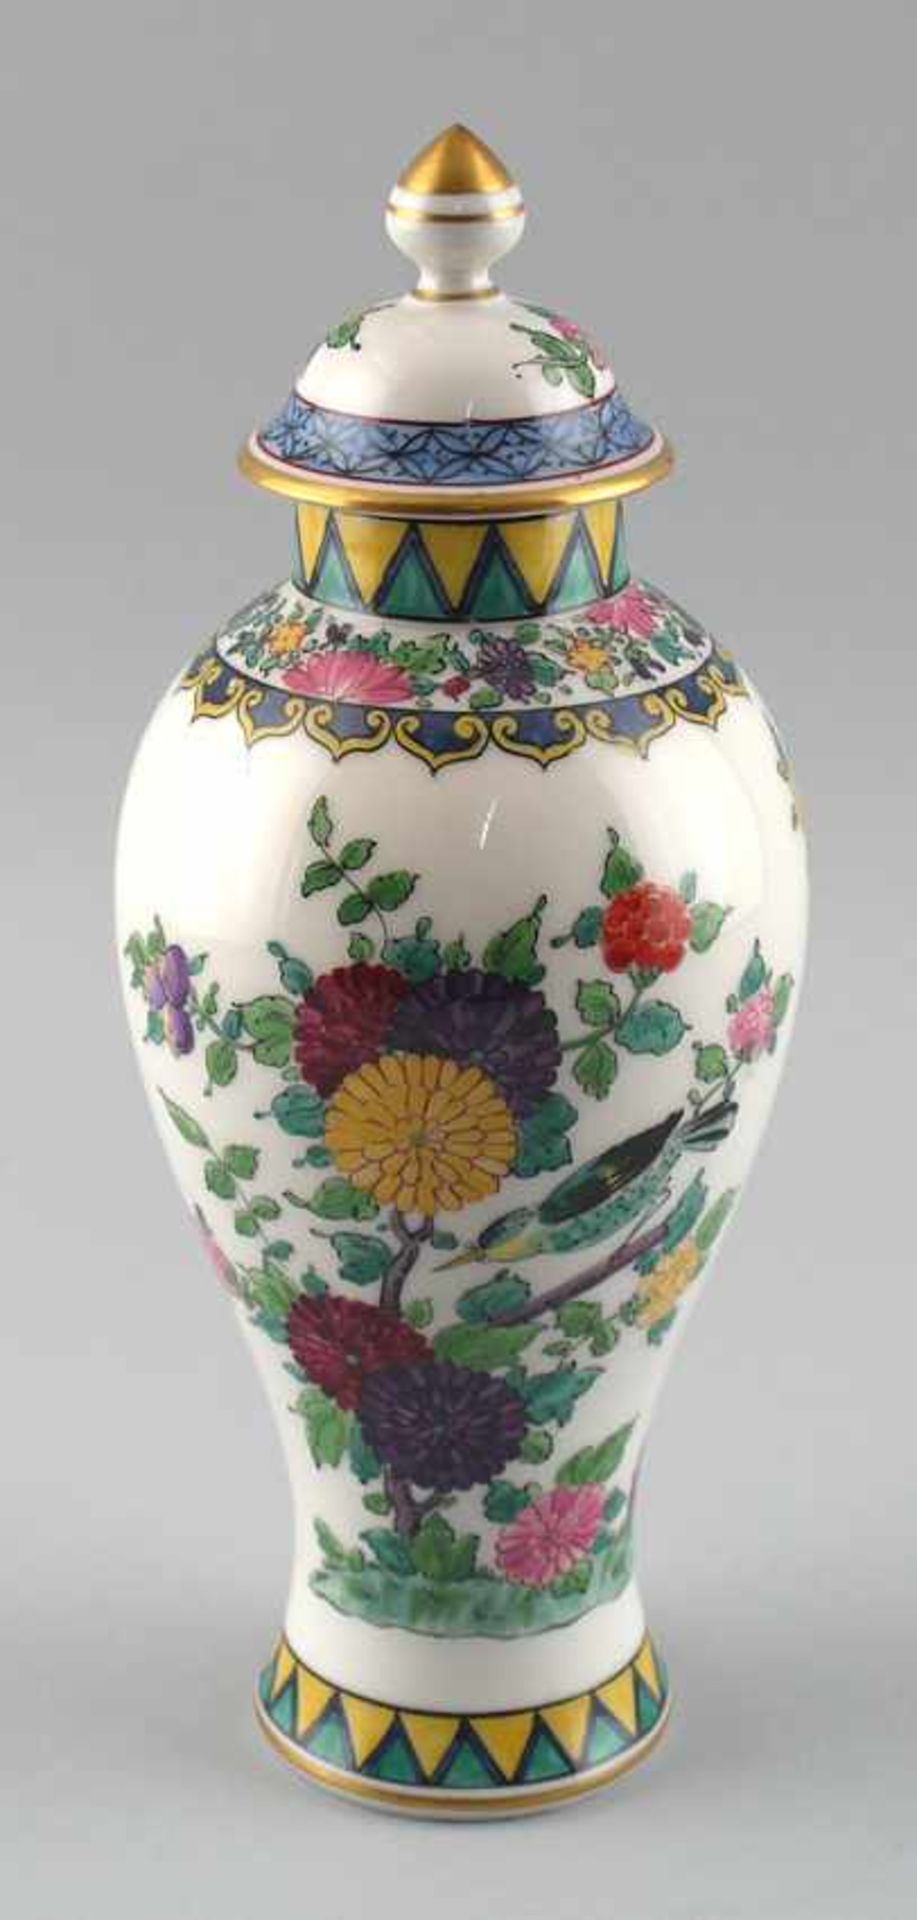 Handbemalte Deckel-Vase im asiatischem Stil. ungemarkt, wohl 20. Jh., bauchiger Korpus mit kurzem,